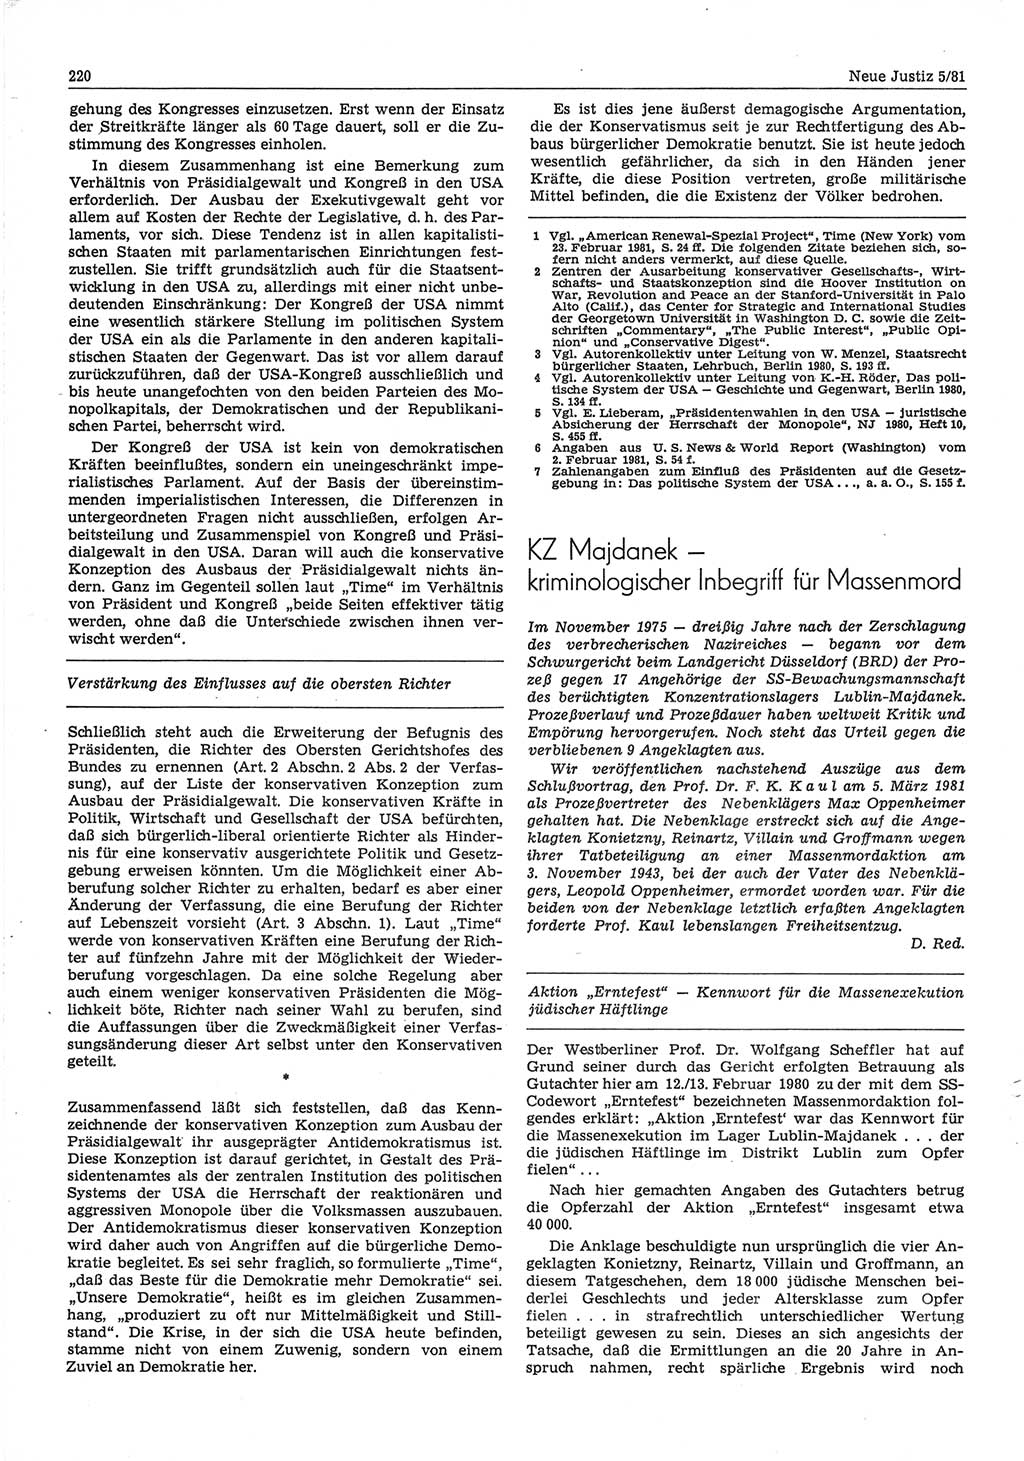 Neue Justiz (NJ), Zeitschrift für sozialistisches Recht und Gesetzlichkeit [Deutsche Demokratische Republik (DDR)], 35. Jahrgang 1981, Seite 220 (NJ DDR 1981, S. 220)